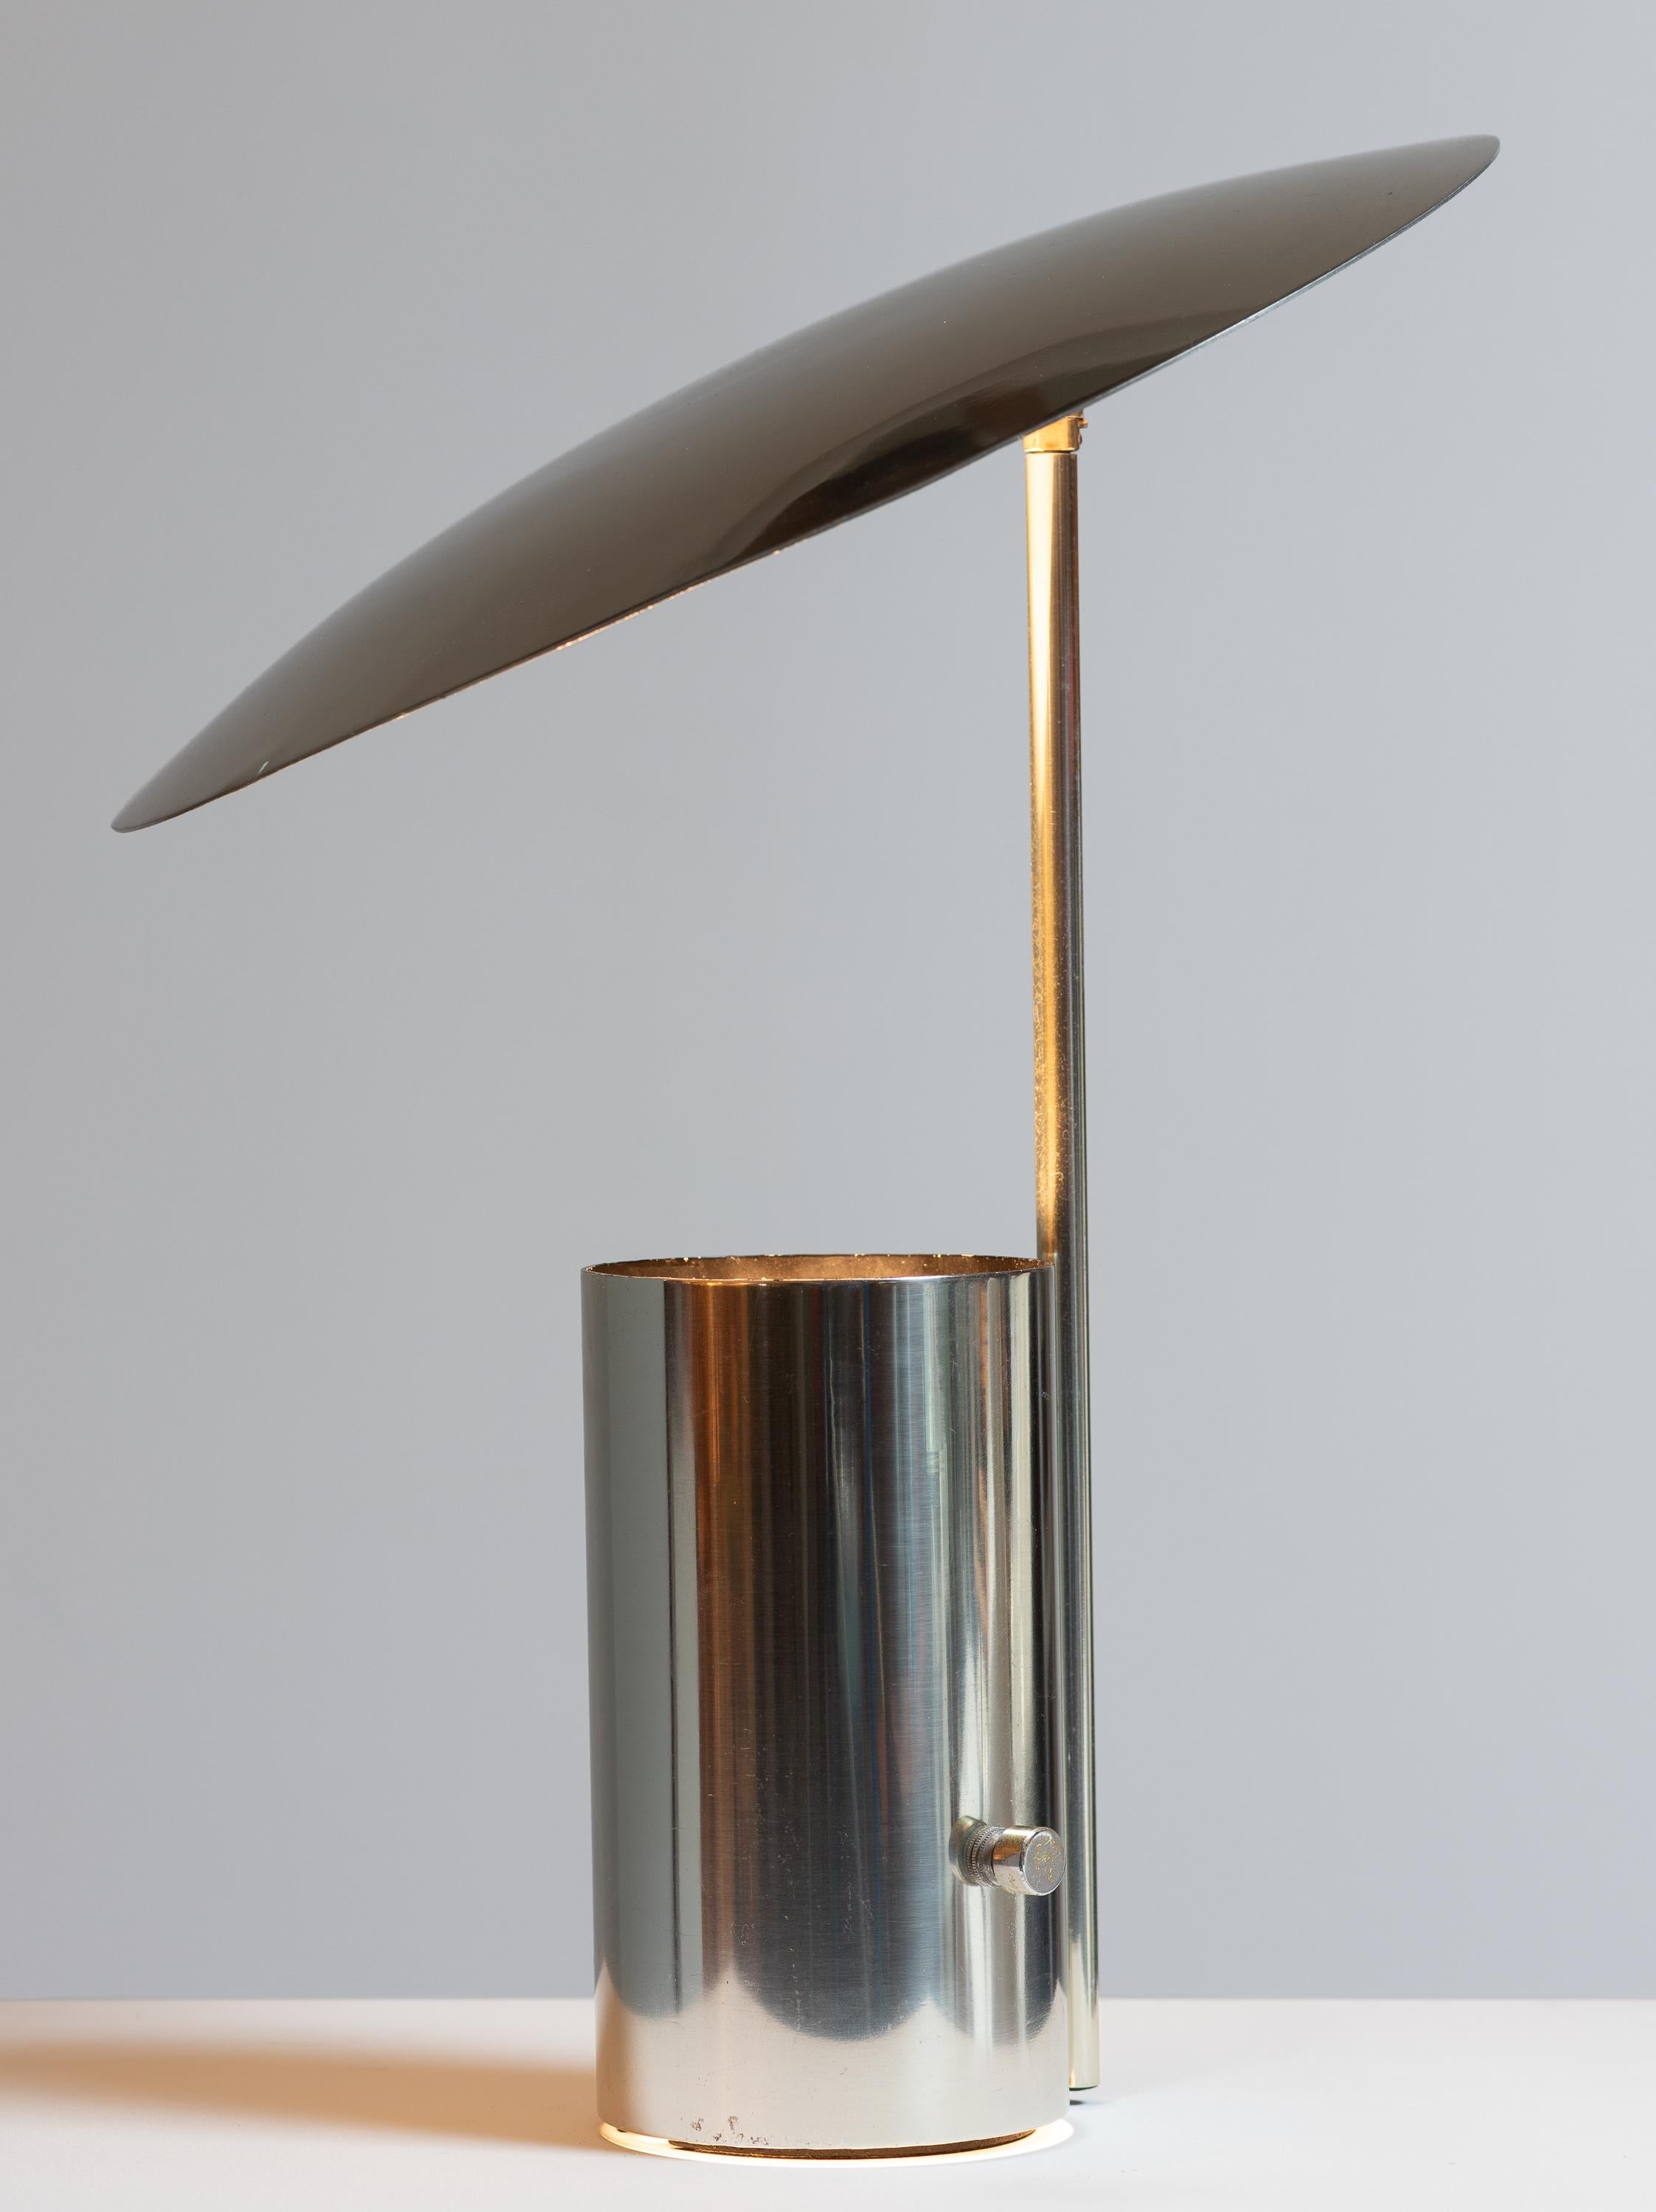 Lampe de table Half Nelson, conçue par George Nelson pour Koch et Lowy. Un design réfléchi, doté d'un abat-jour pivotant en aluminium filé, qui offre un éclairage personnalisable. La source lumineuse bidirectionnelle est dissimulée dans la base